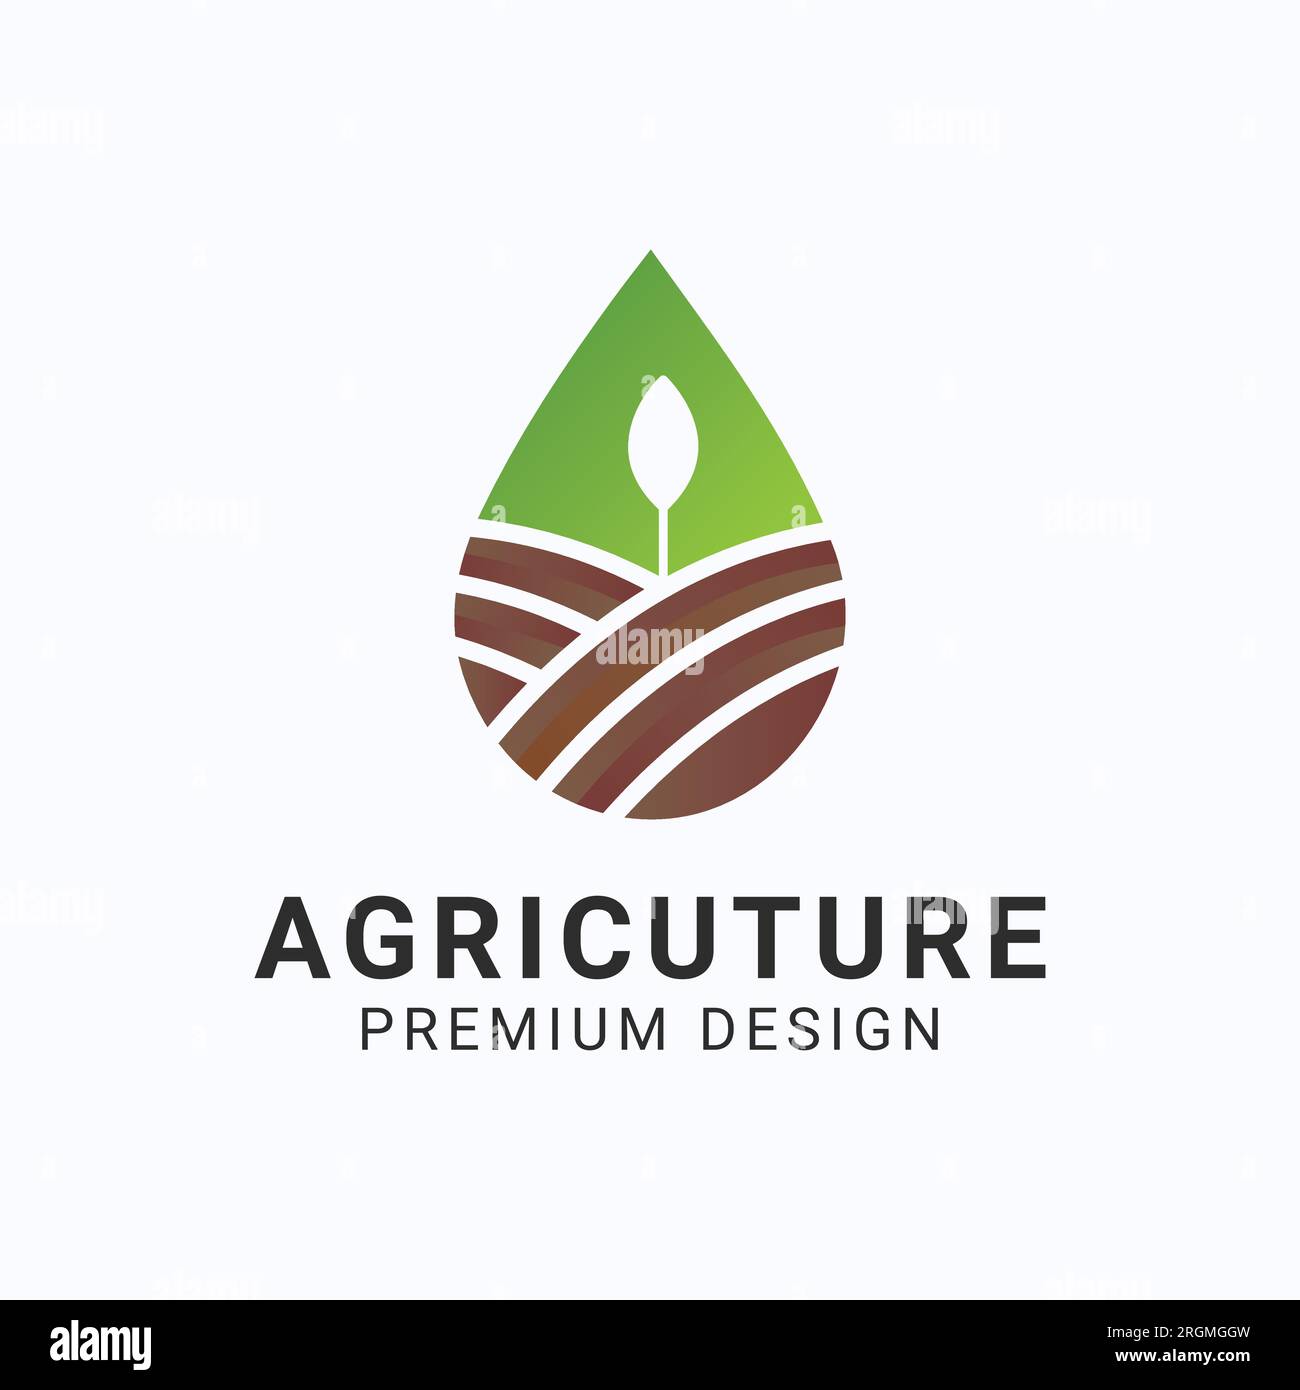 Water Drop Agriculture Land Scape logo Design nature Farm Rural Logotype Illustration de Vecteur